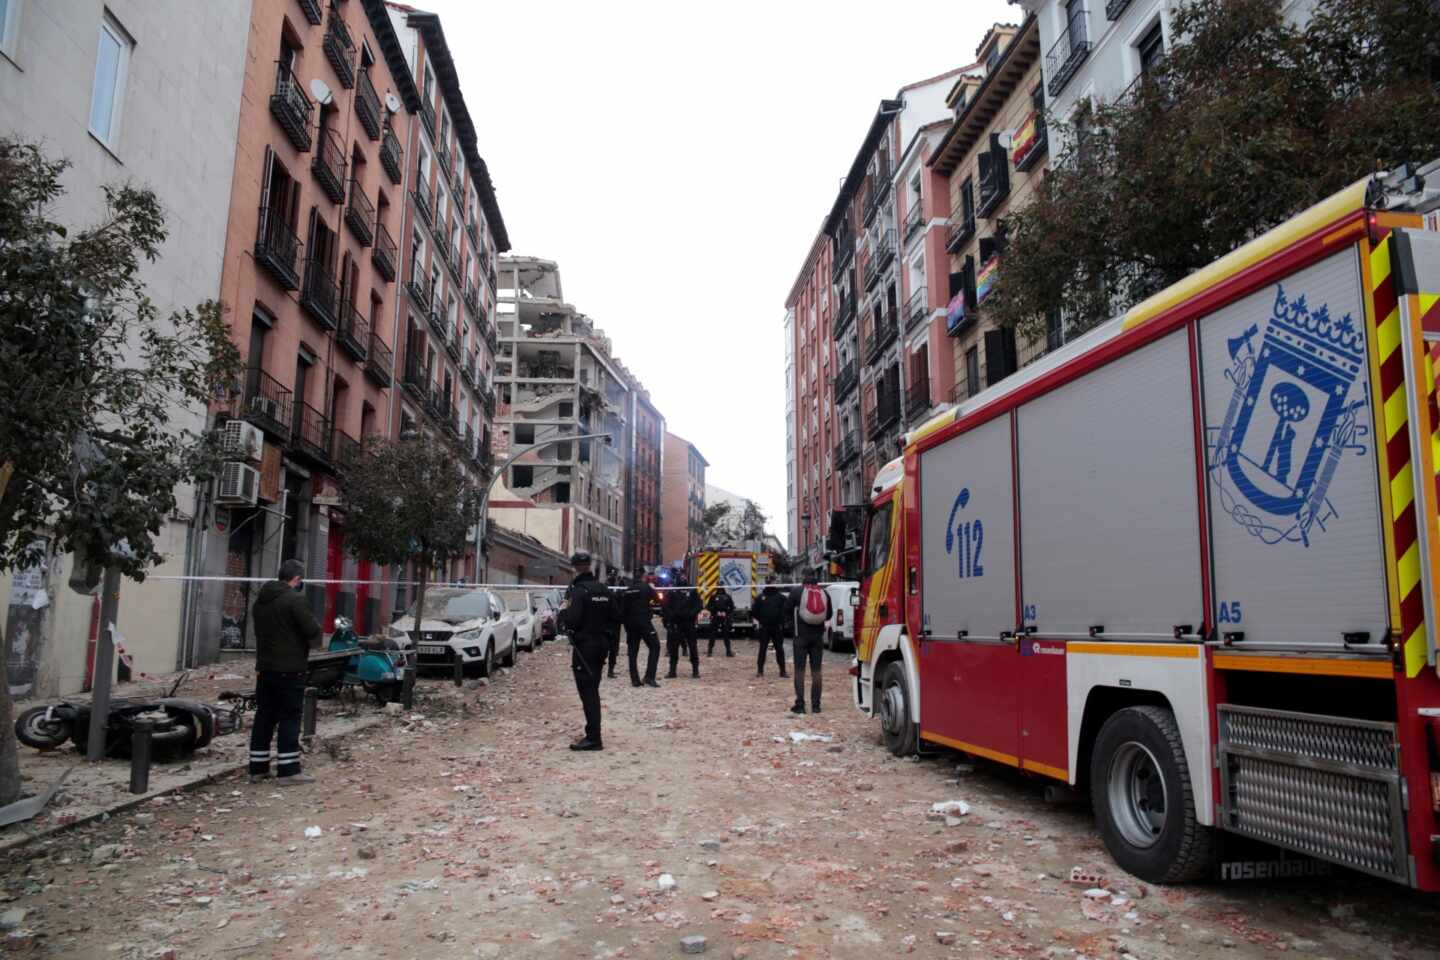 El párroco de la parroquia que explotó en Madrid asegura que no manipularon las calderas